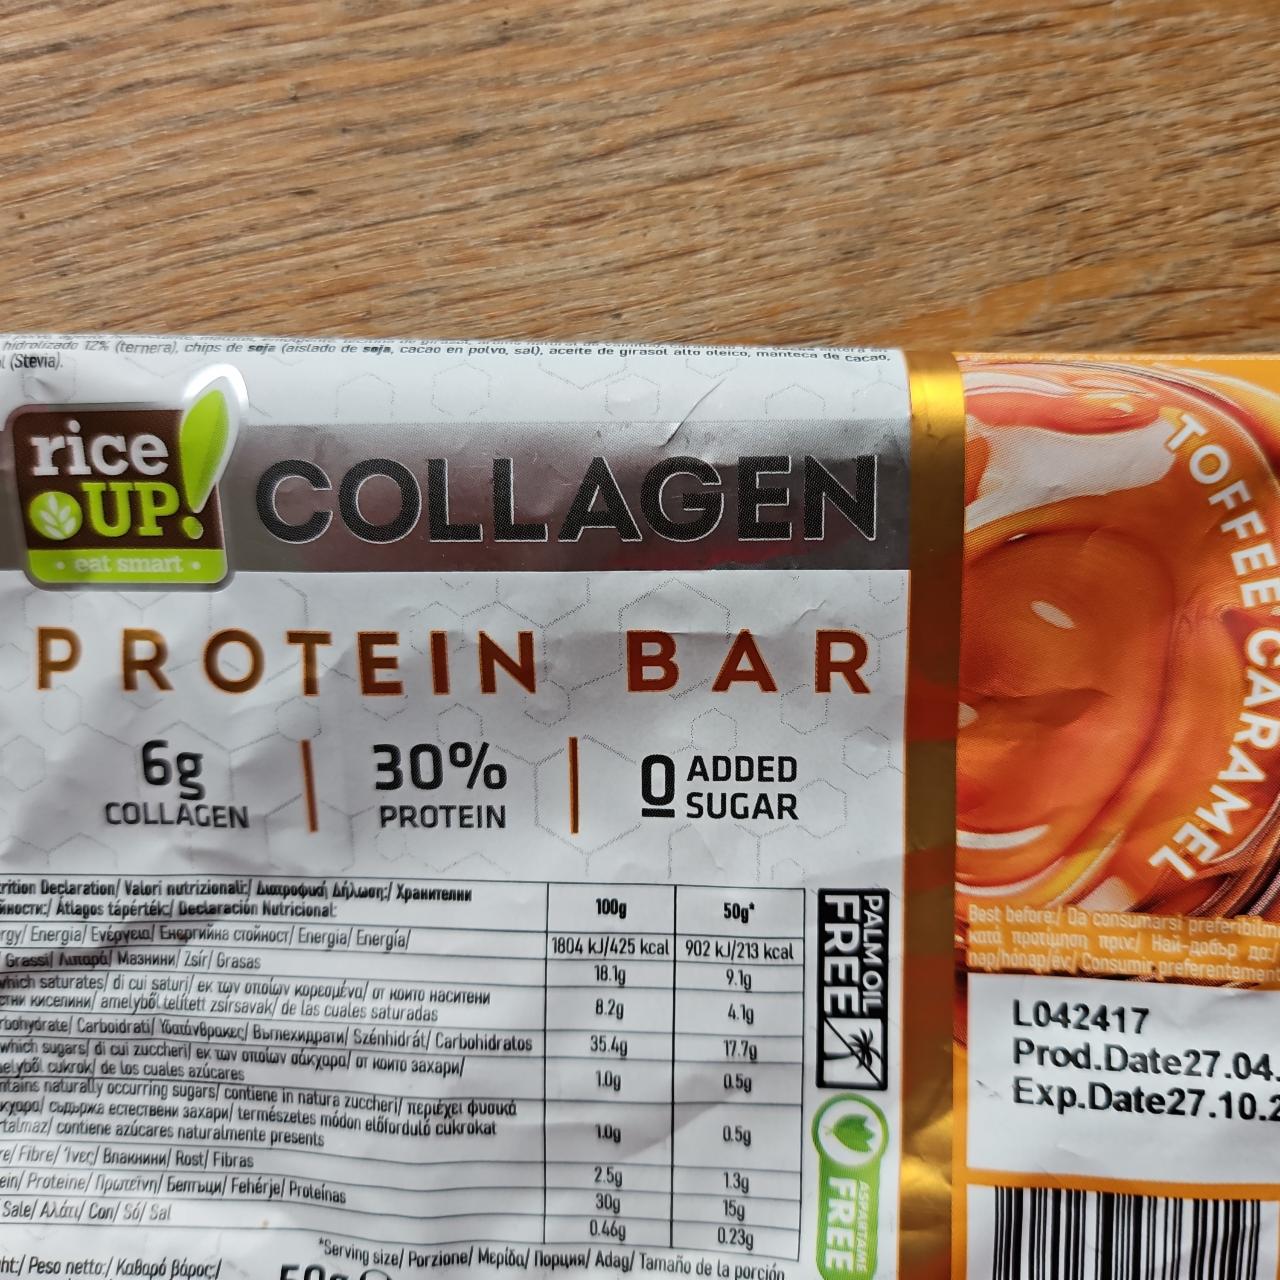 Fotografie - Collagen protein bar toffee caramel Rice up!